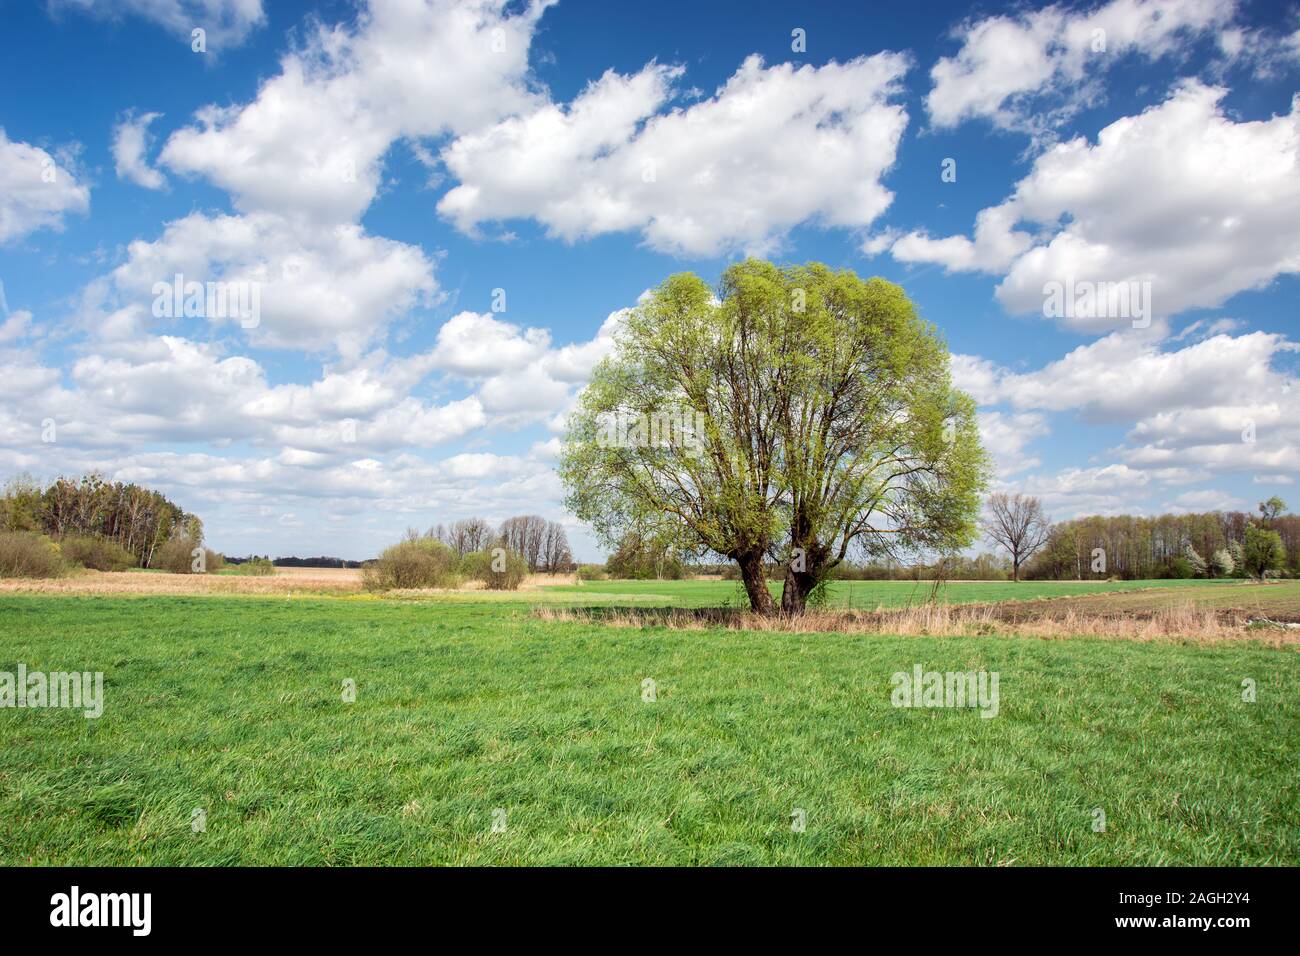 Große Willow Tree auf der grünen Wiese und weiße Wolken am blauen Himmel - Frühjahr anzeigen Stockfoto